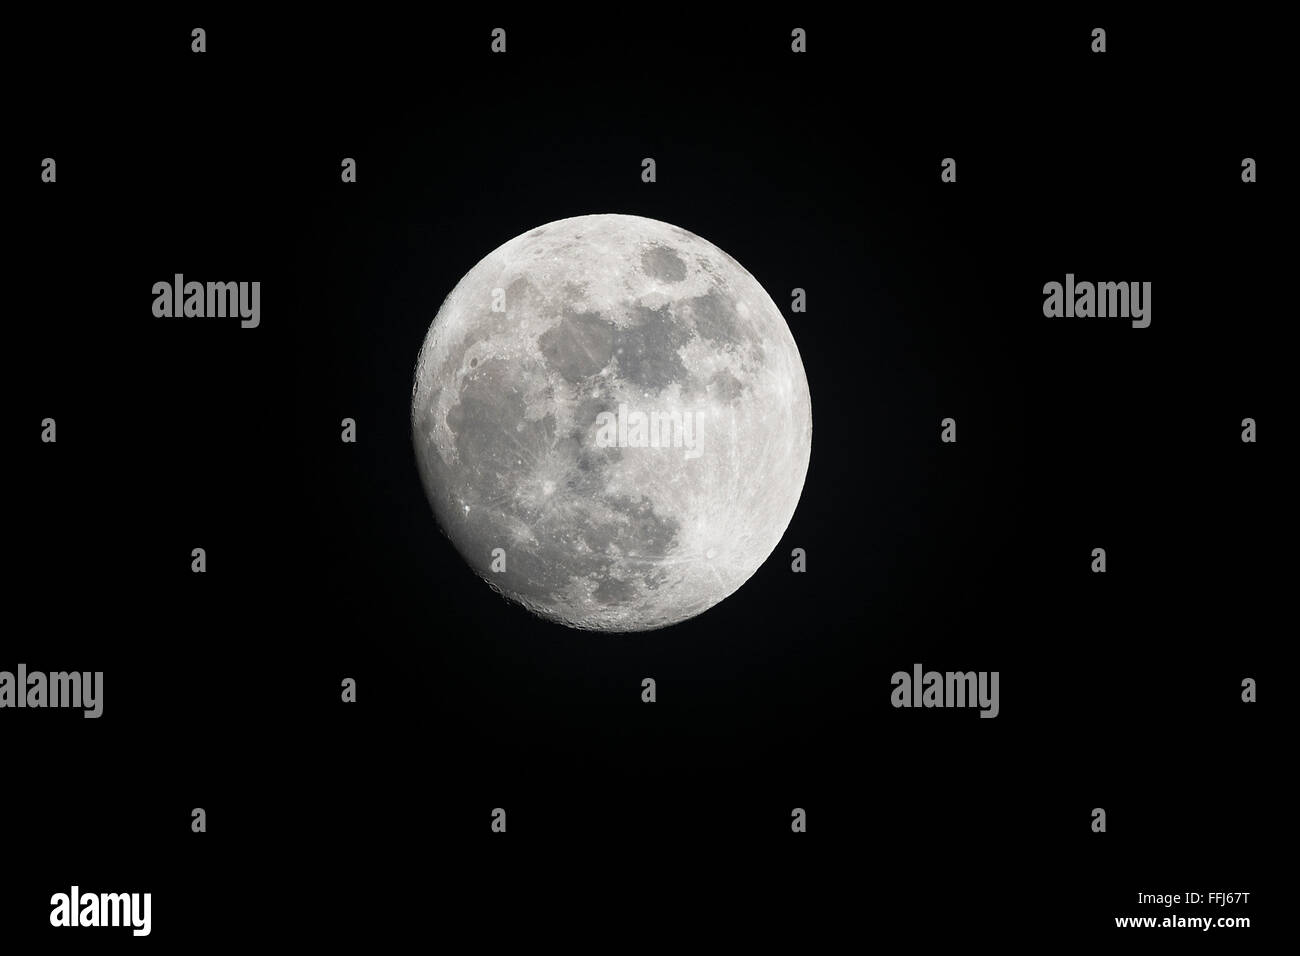 Immagine di una luna piena girato durante gli spettacoli serali al chiaro di luna evidenziando le caratteristiche del pianeta. Foto Stock